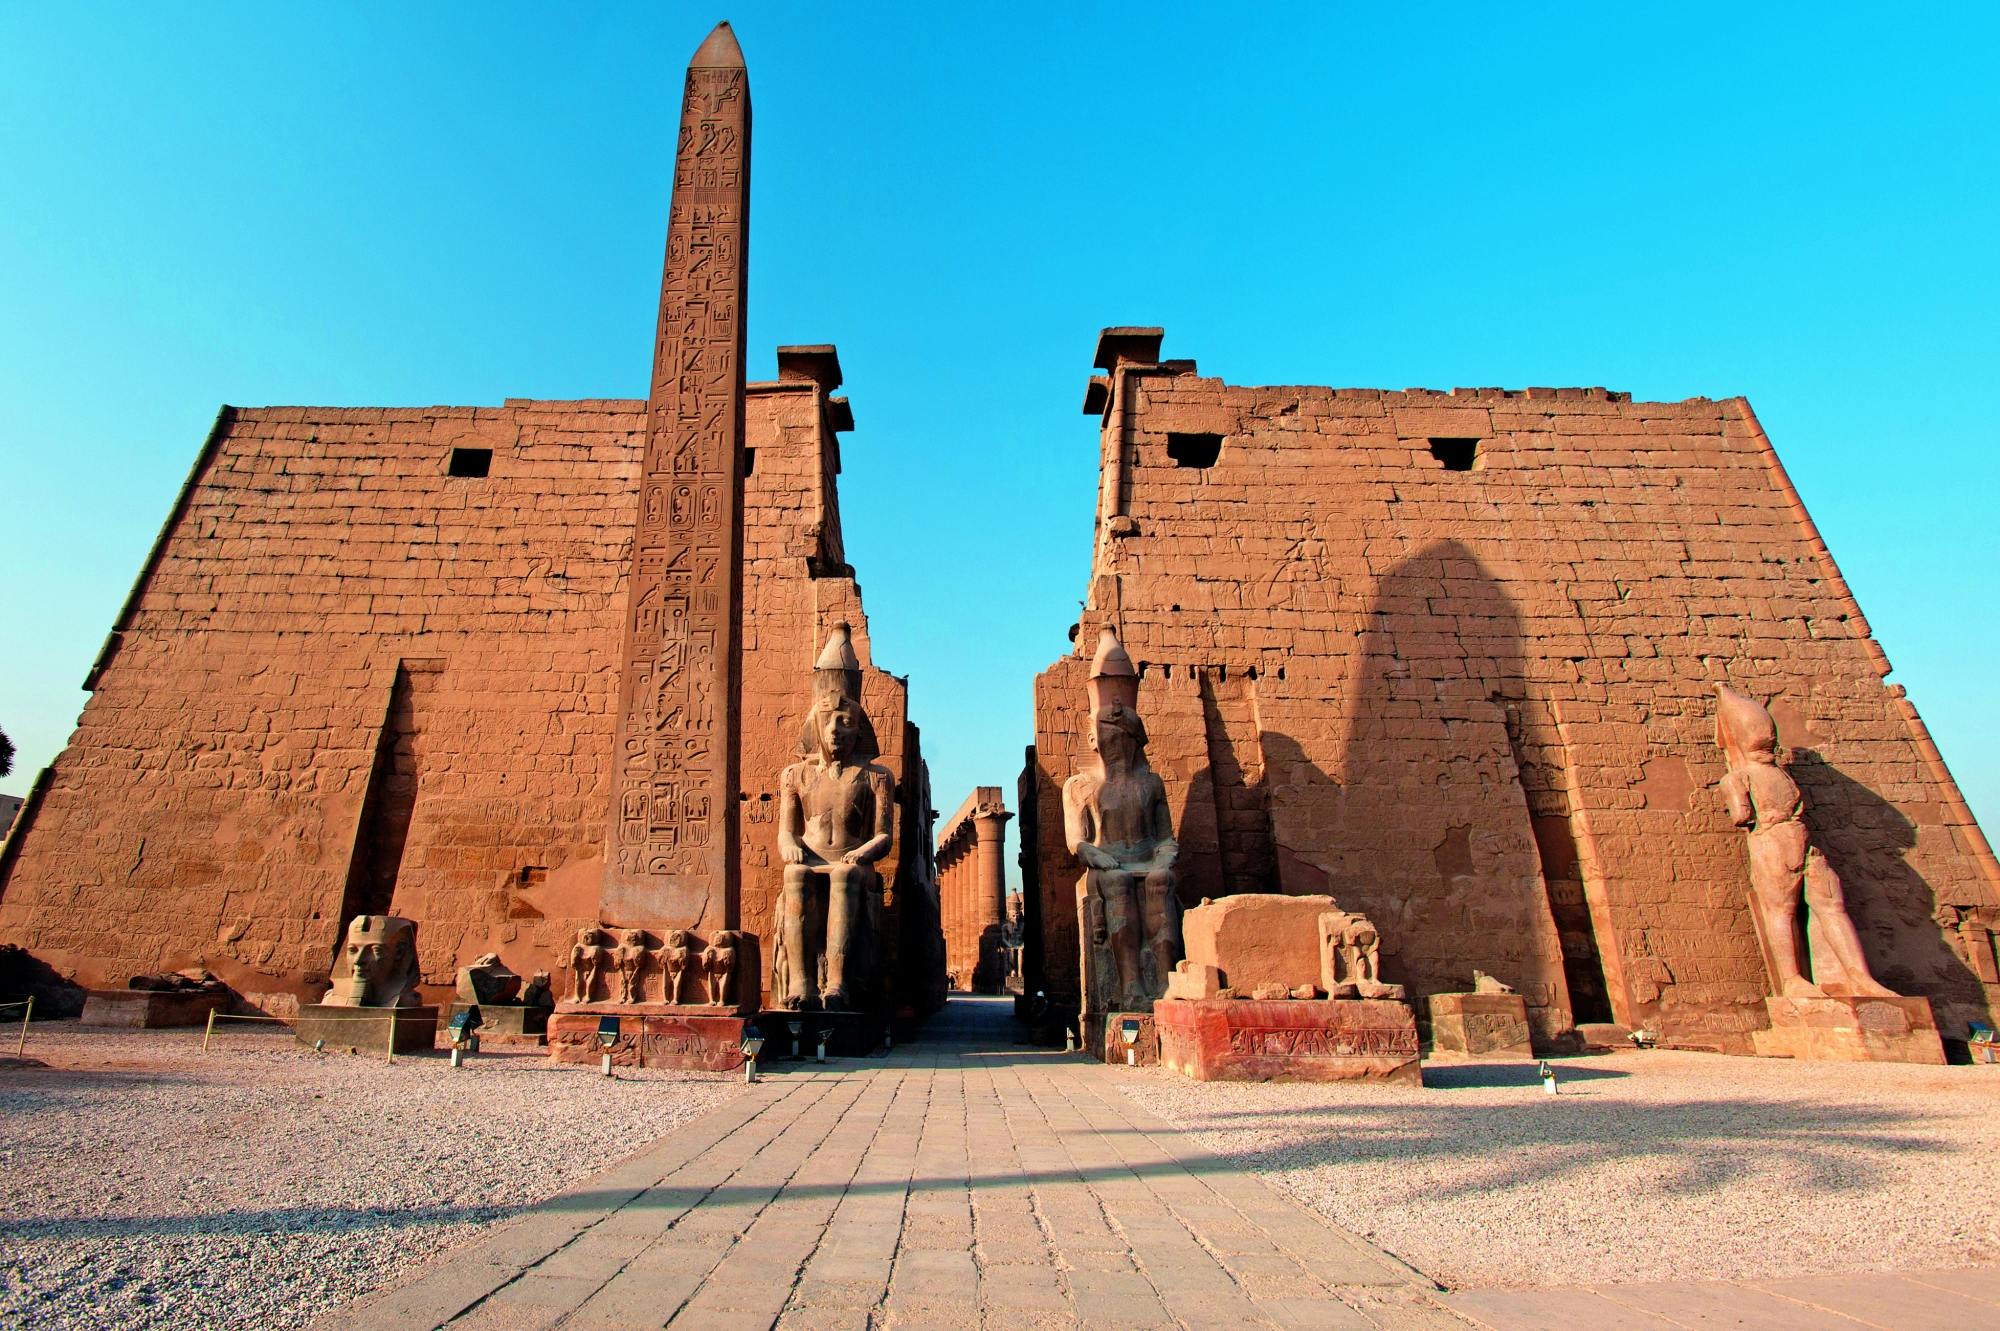 Visita guiada por Luxor saindo de Marsa Alam com egiptólogo privado